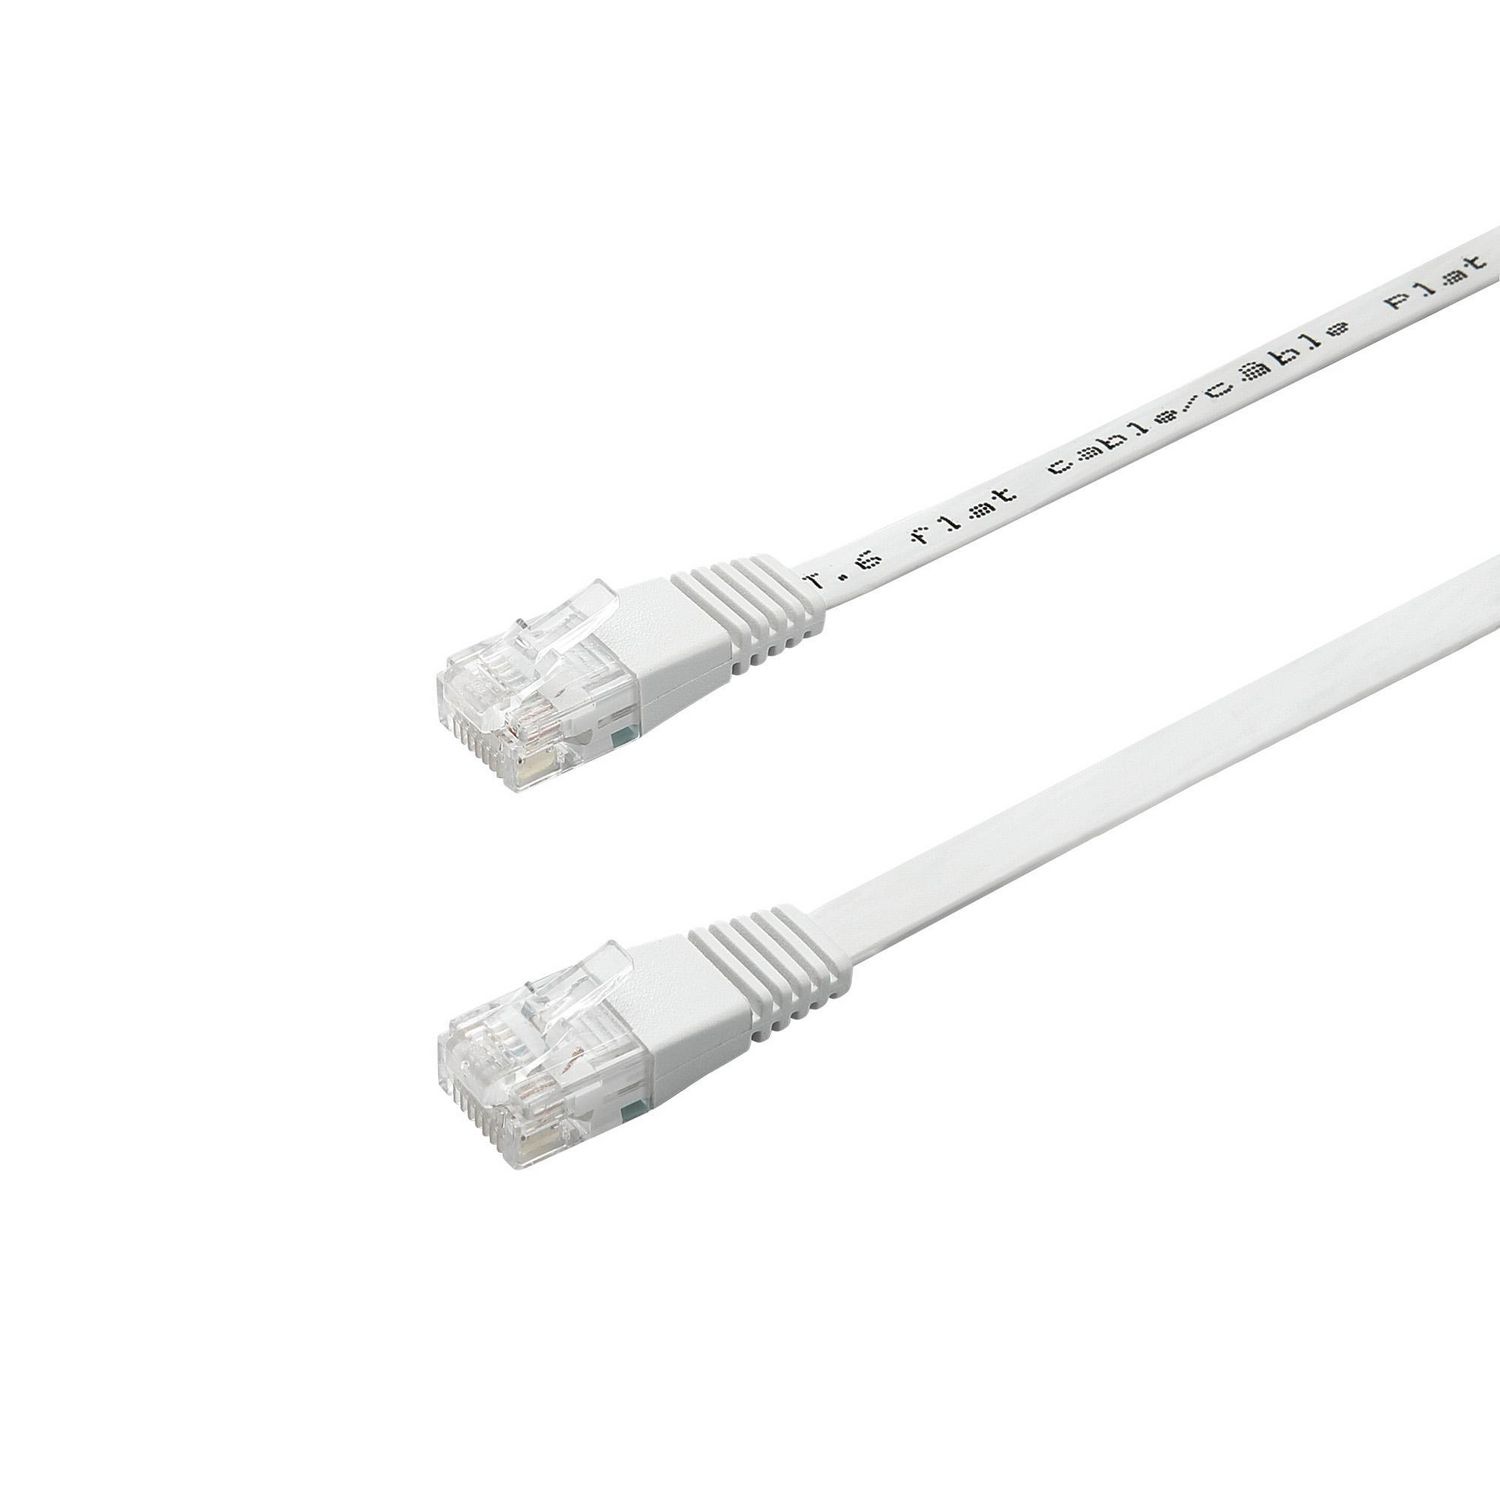 ONN ™ 4.2 meter RJ45 Flat CAT Cable (White)